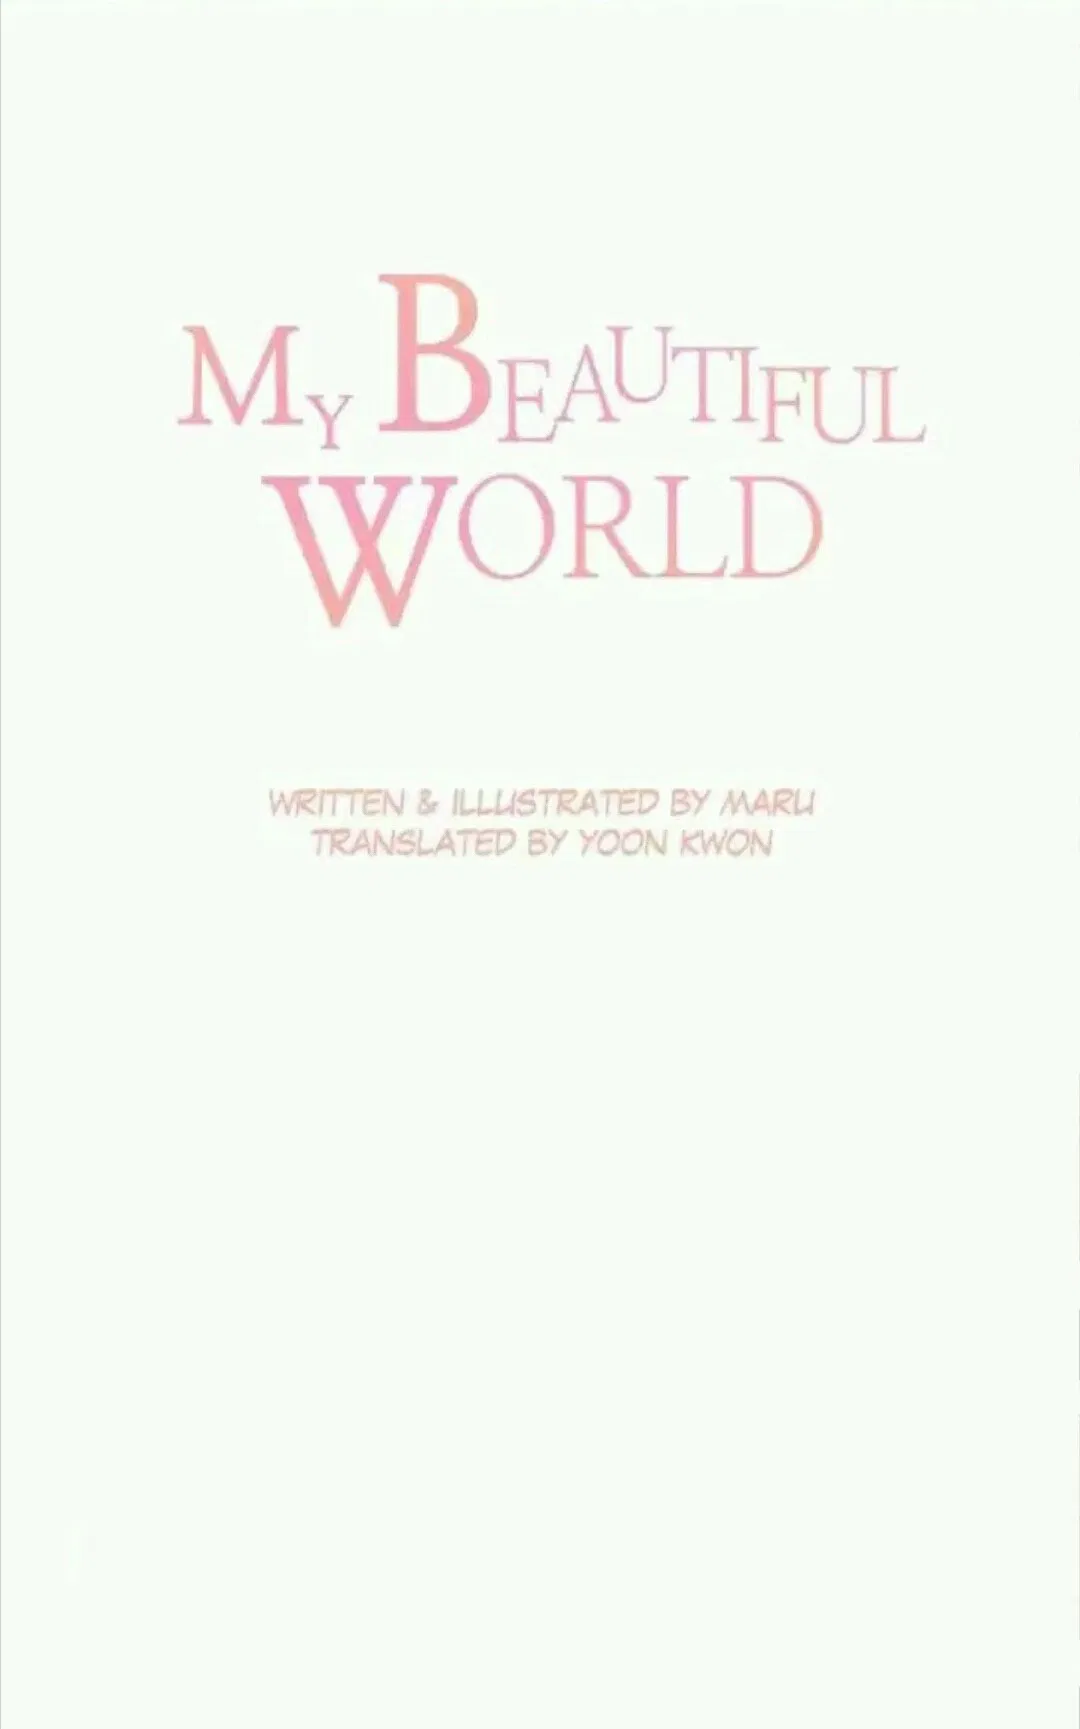 My Beautiful World Chapter 42